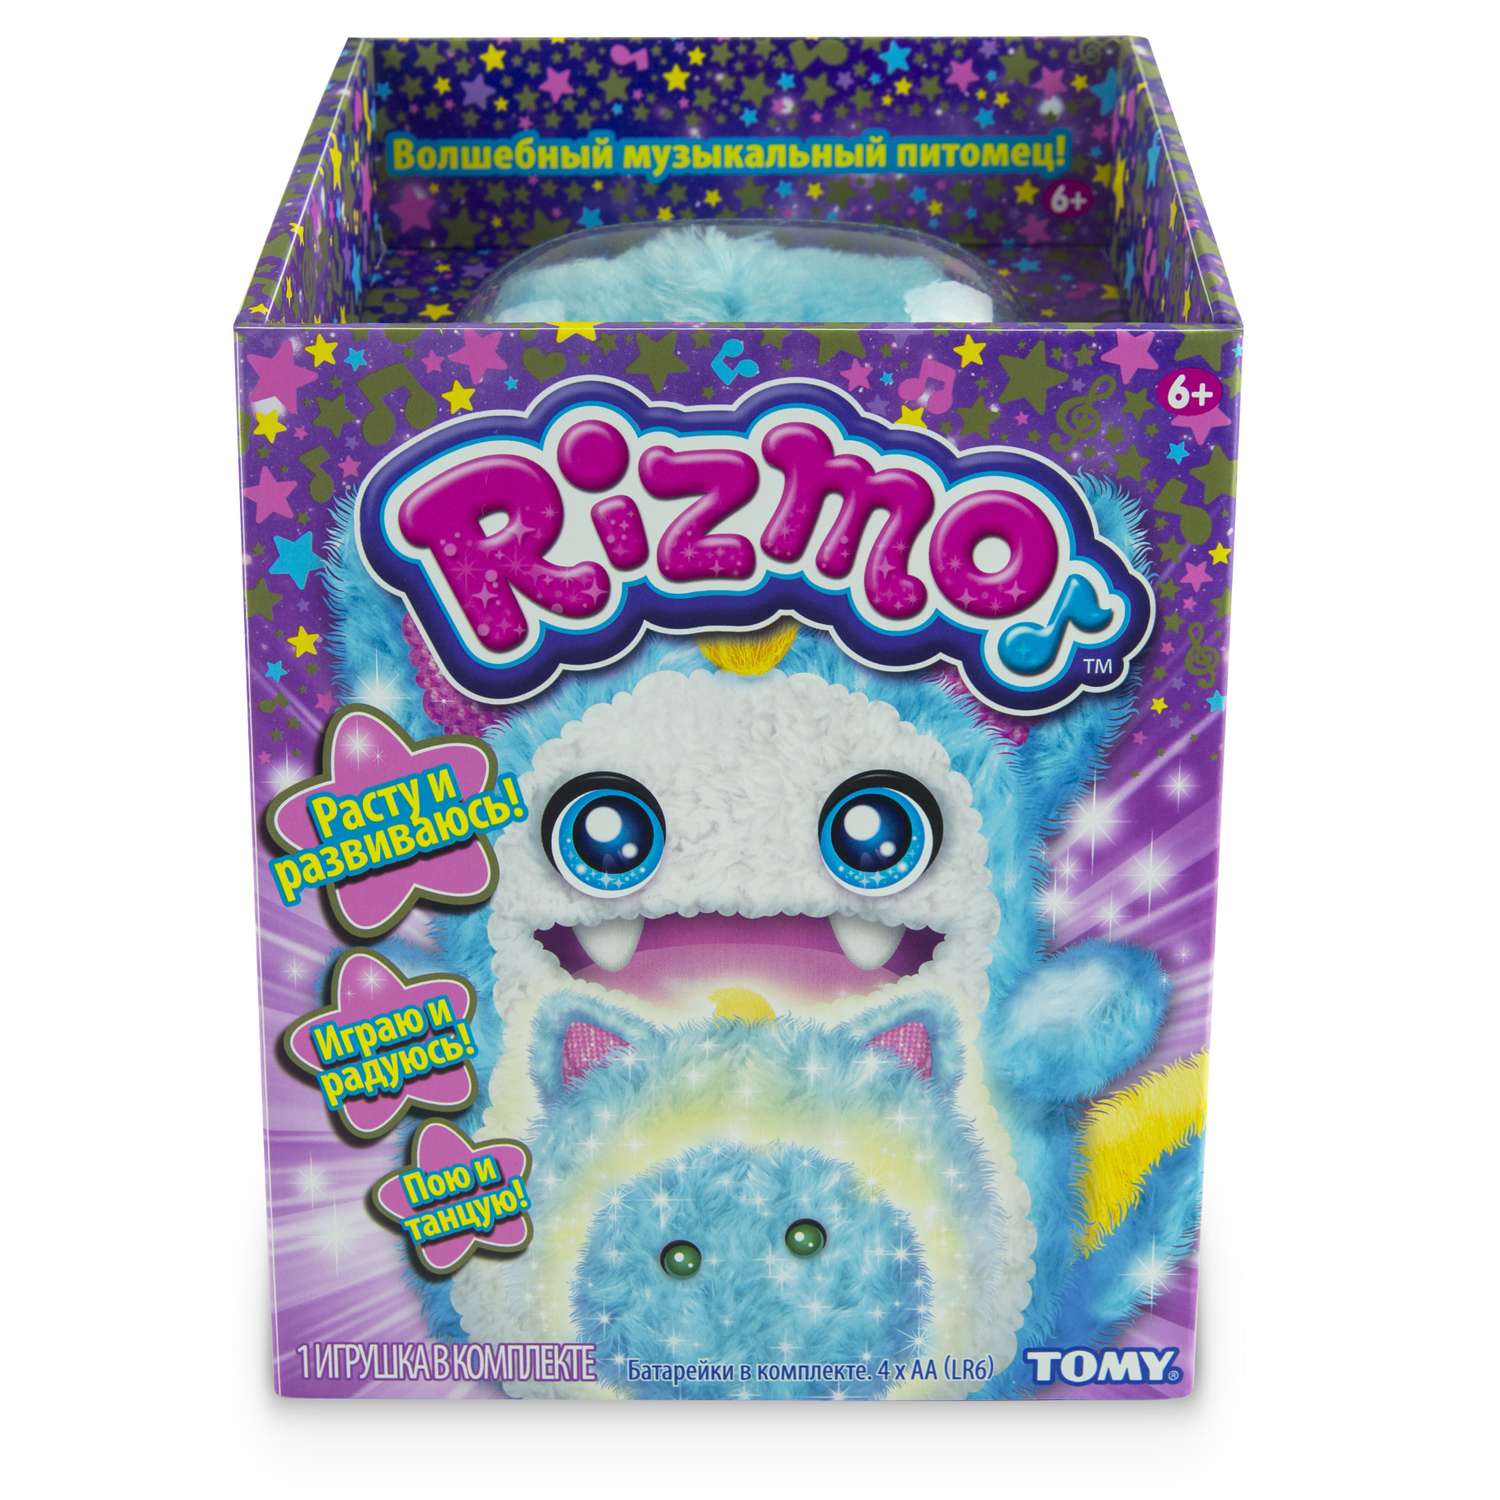 Игрушка мягкая Rizmo Aqua интерактивная в непрозрачной упаковке (Сюрприз) 37053 - фото 2